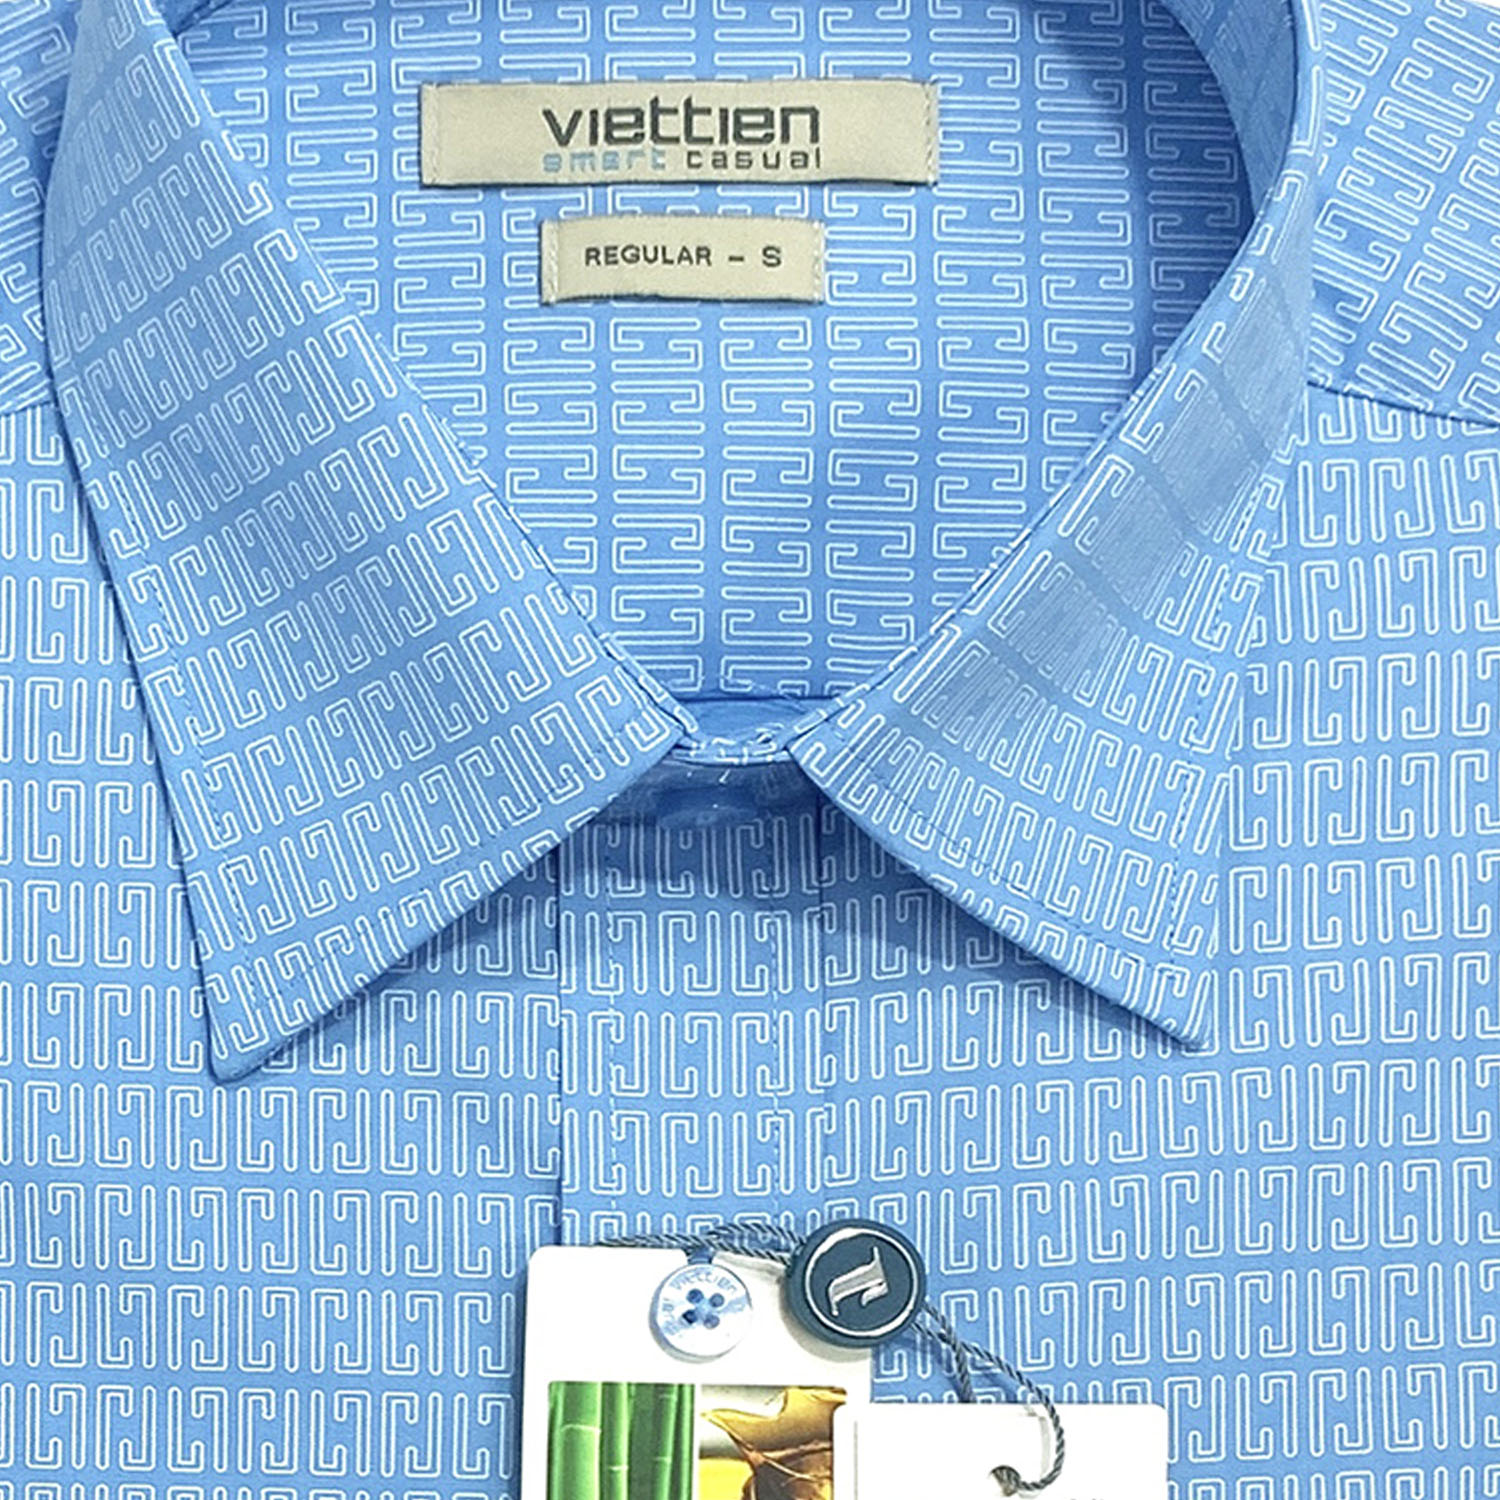 Viettien - Áo sơ mi nam ngắn tay xẻ tà vạt ngang họa tiết 6R0325 regular dáng rộng